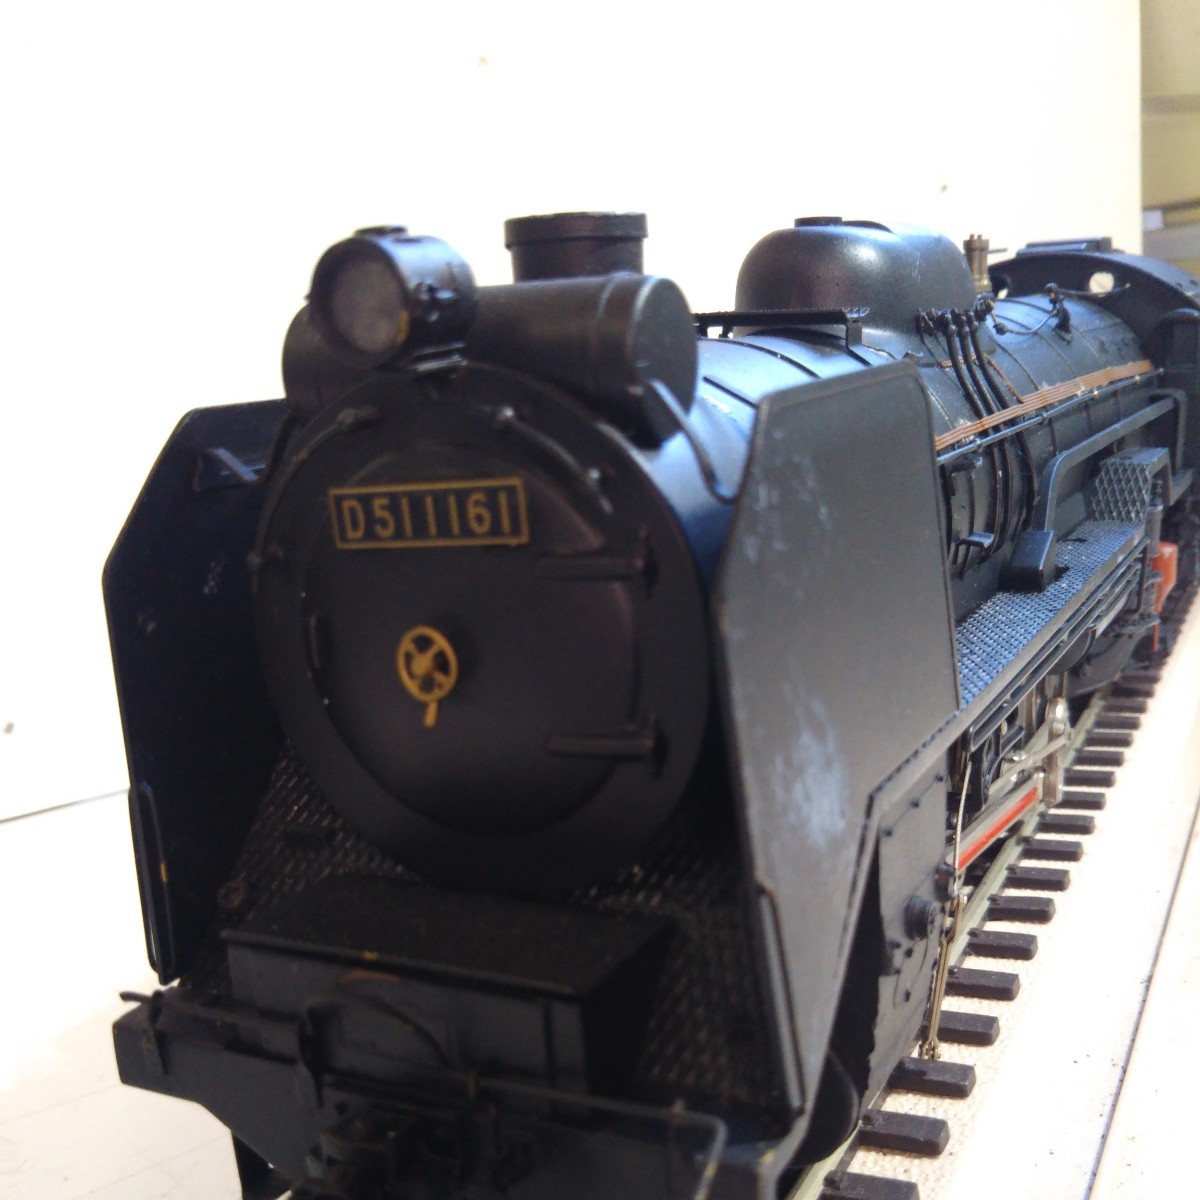 鉄道模型 蒸気機関車D51模型 鉄製プラケースヴィンテージノベルティー アンティーク置物オブジェ_画像3